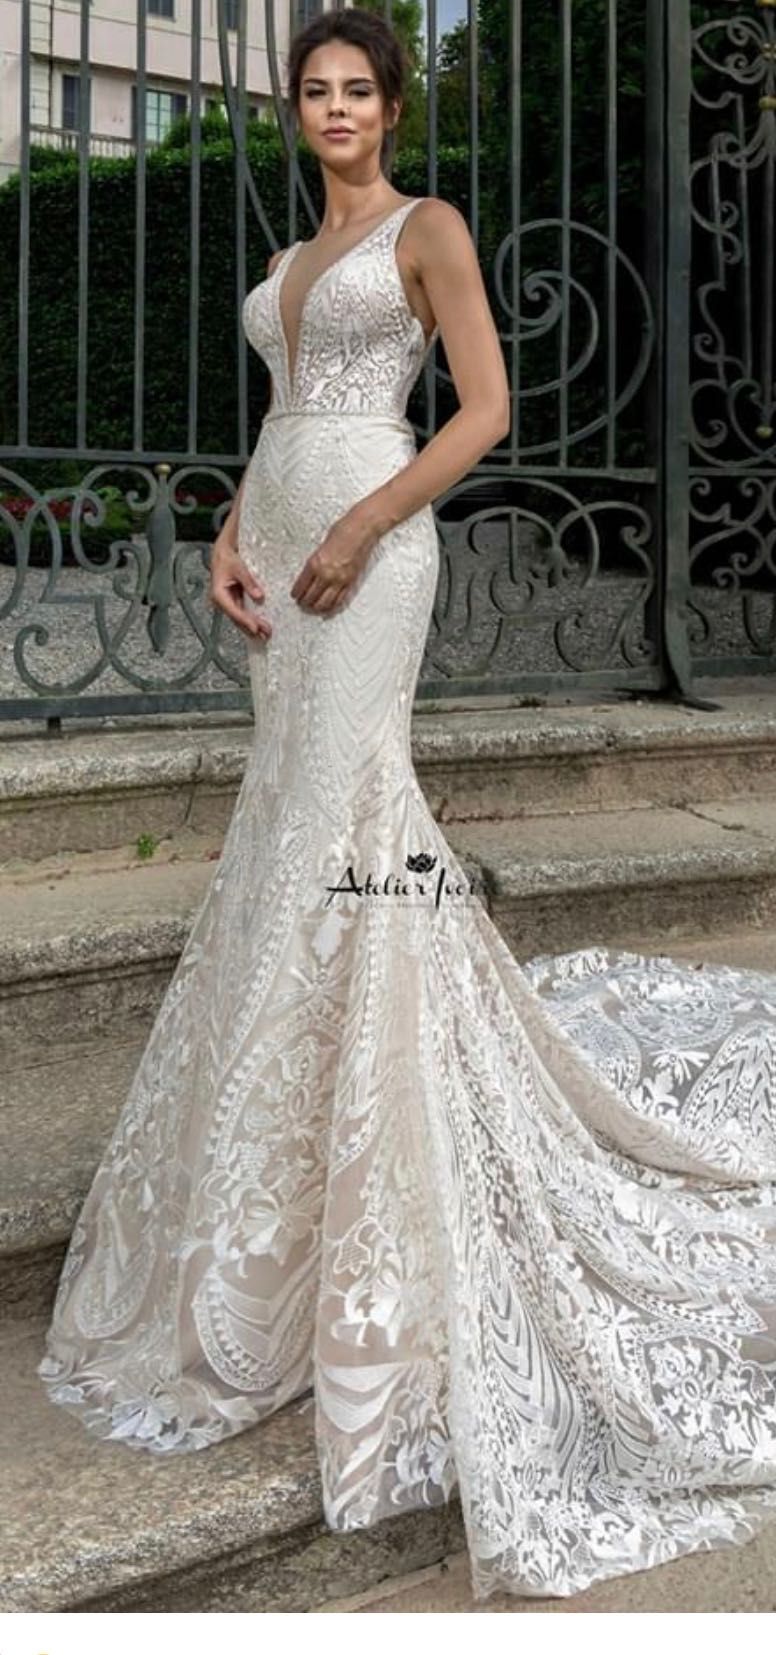 Сватбена/ Булчинска рокля Atelier Ivoire